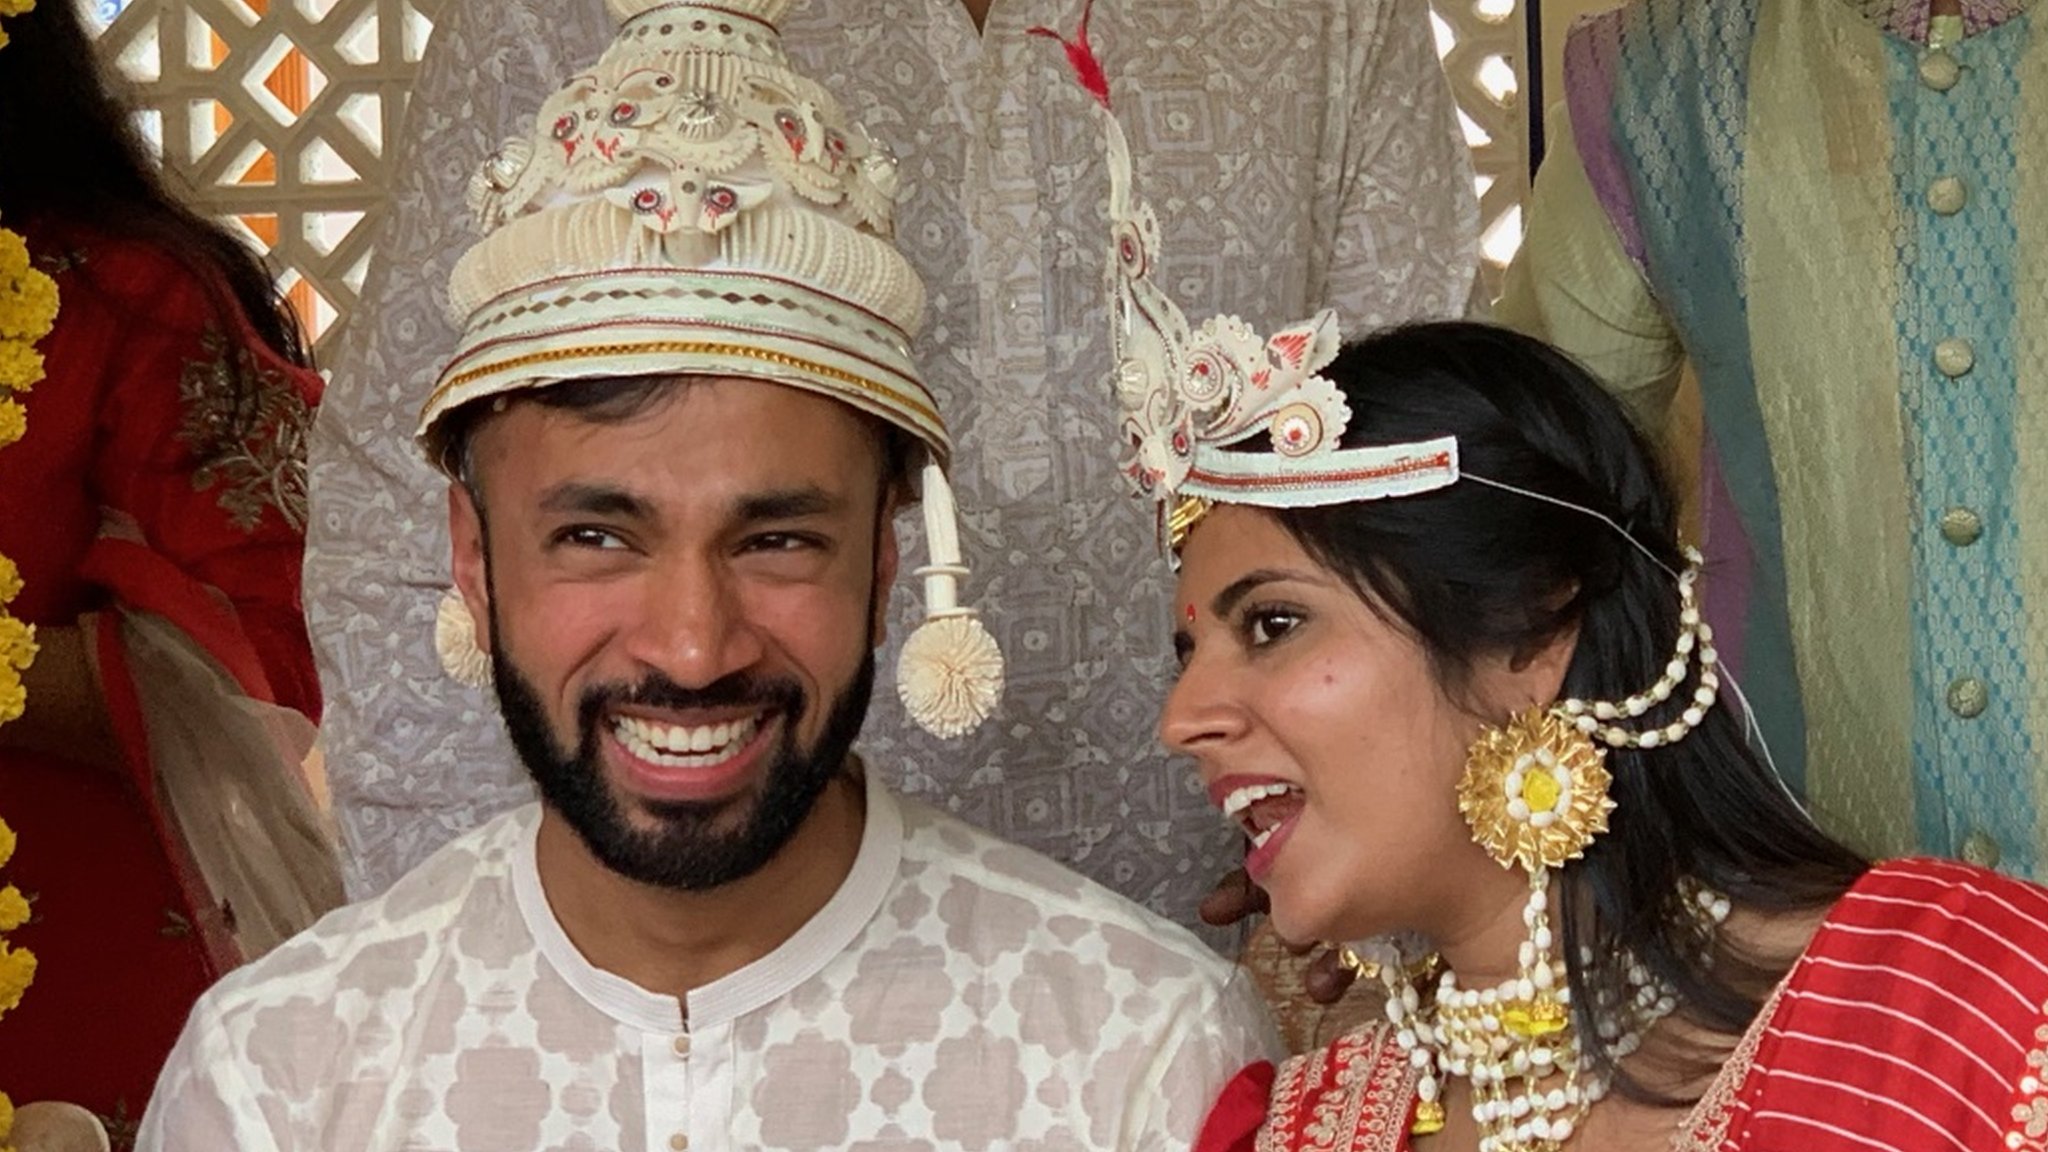 Encontré a mi esposa tras mirar 300 hojas de vida y conocer a varias candidatas cómo es una fastuosa boda arreglada en India foto